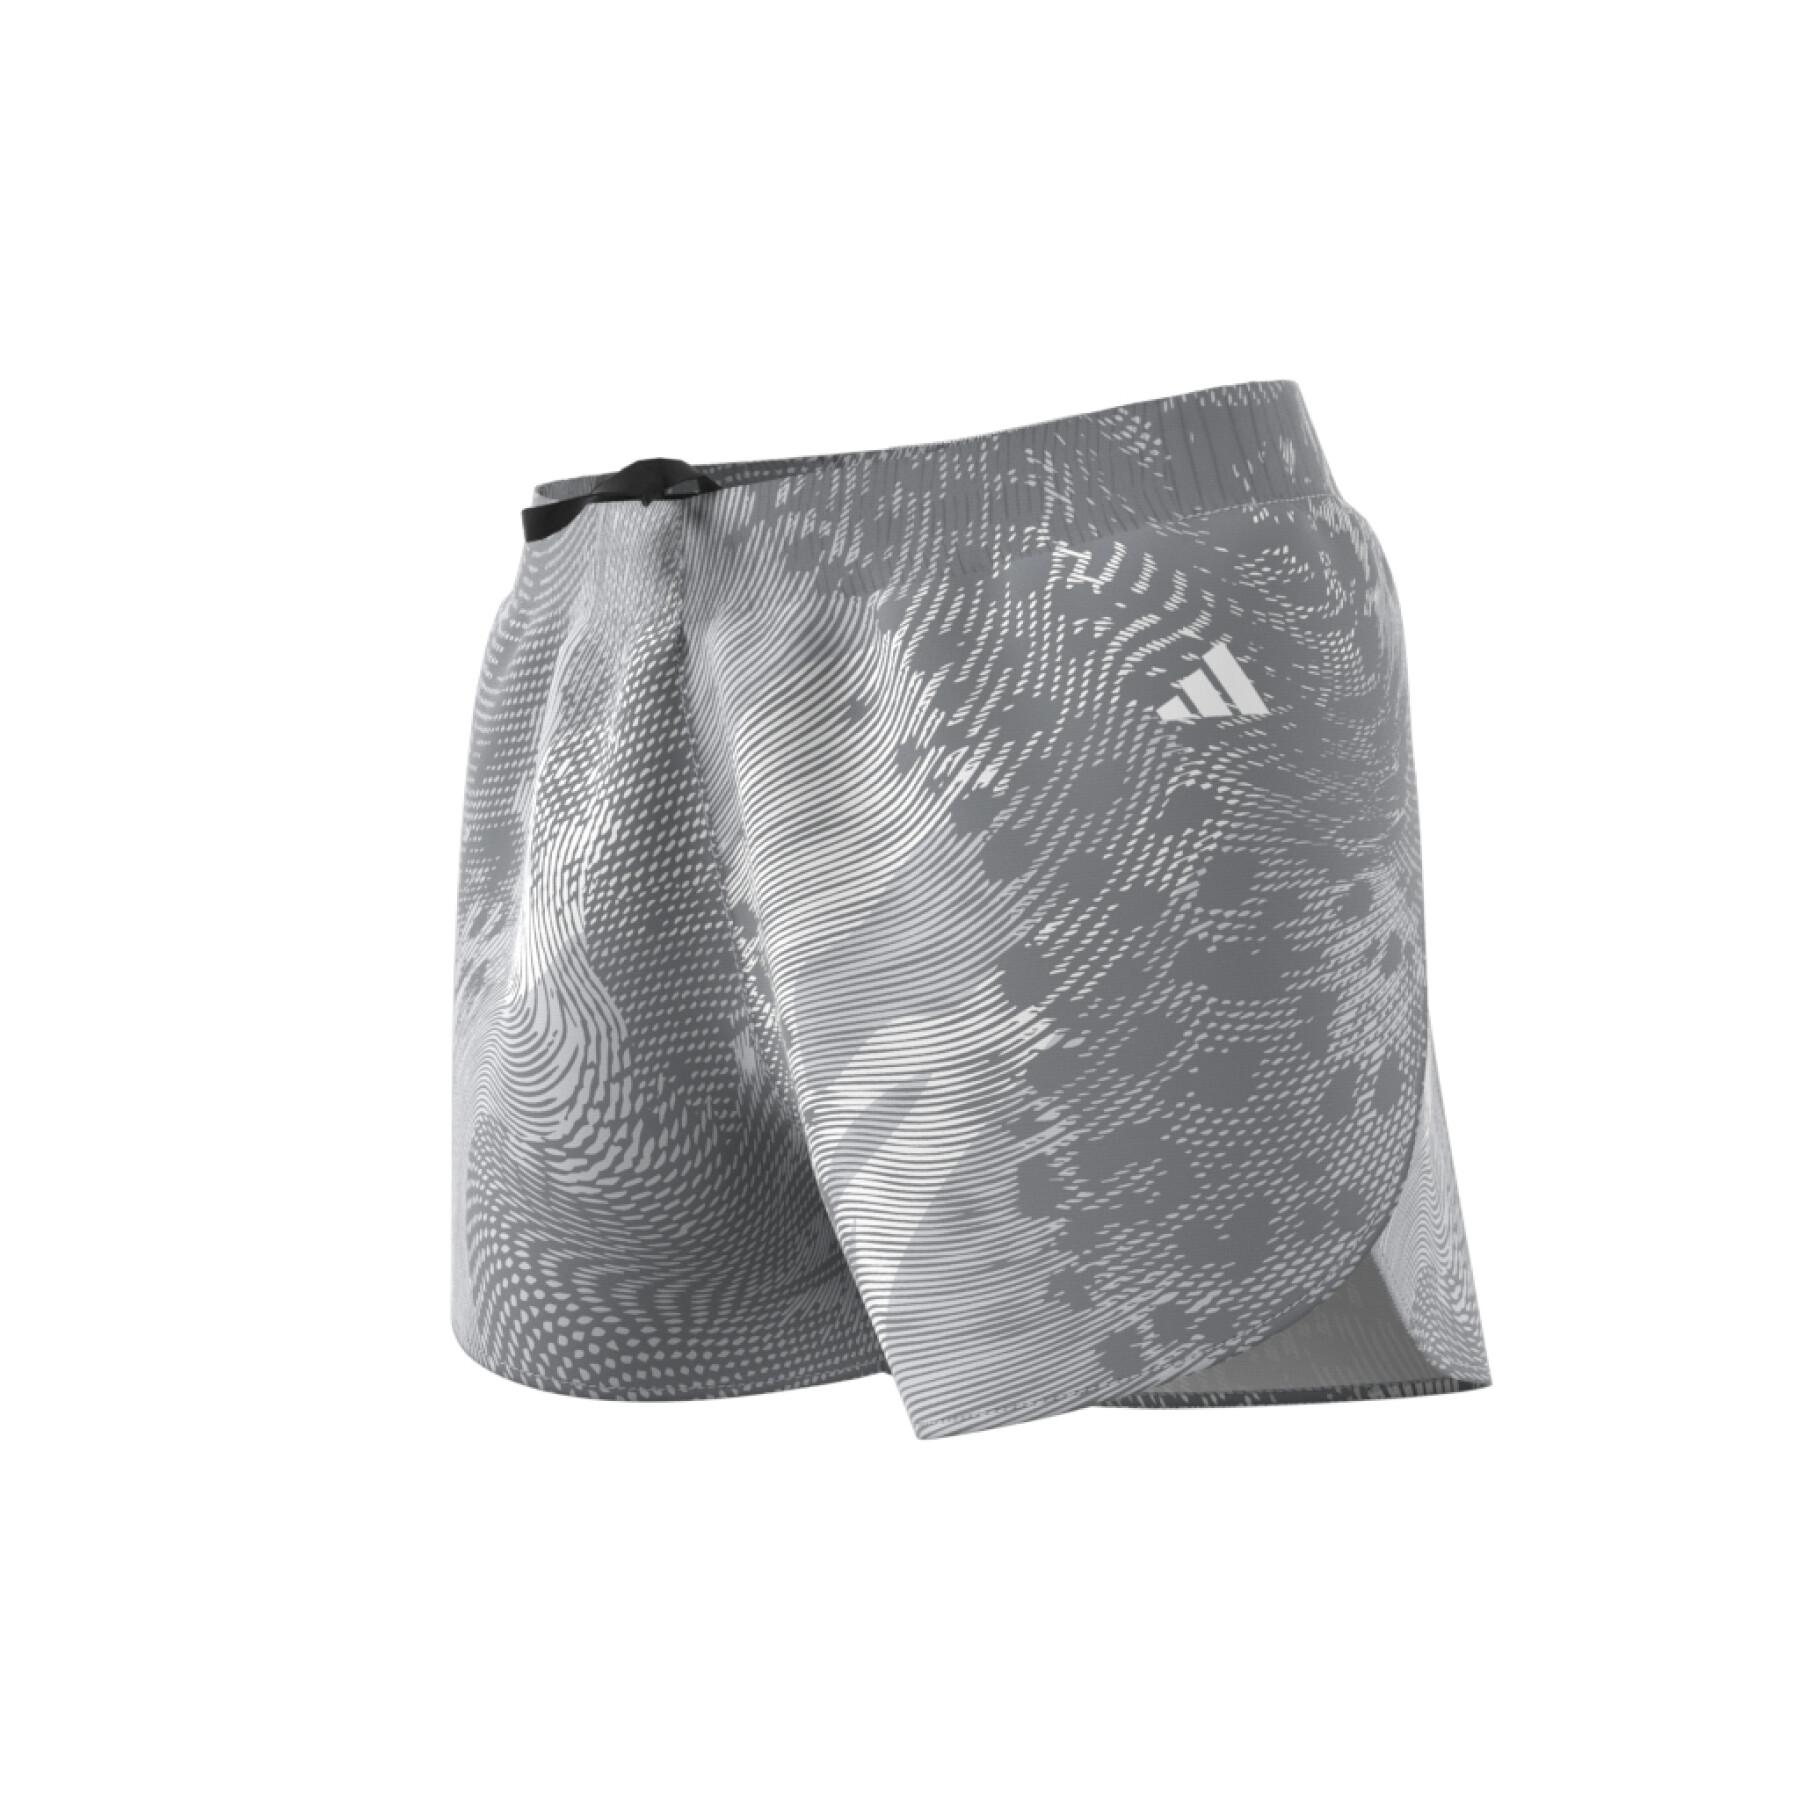 Women's shorts from running adidas Adizero Split